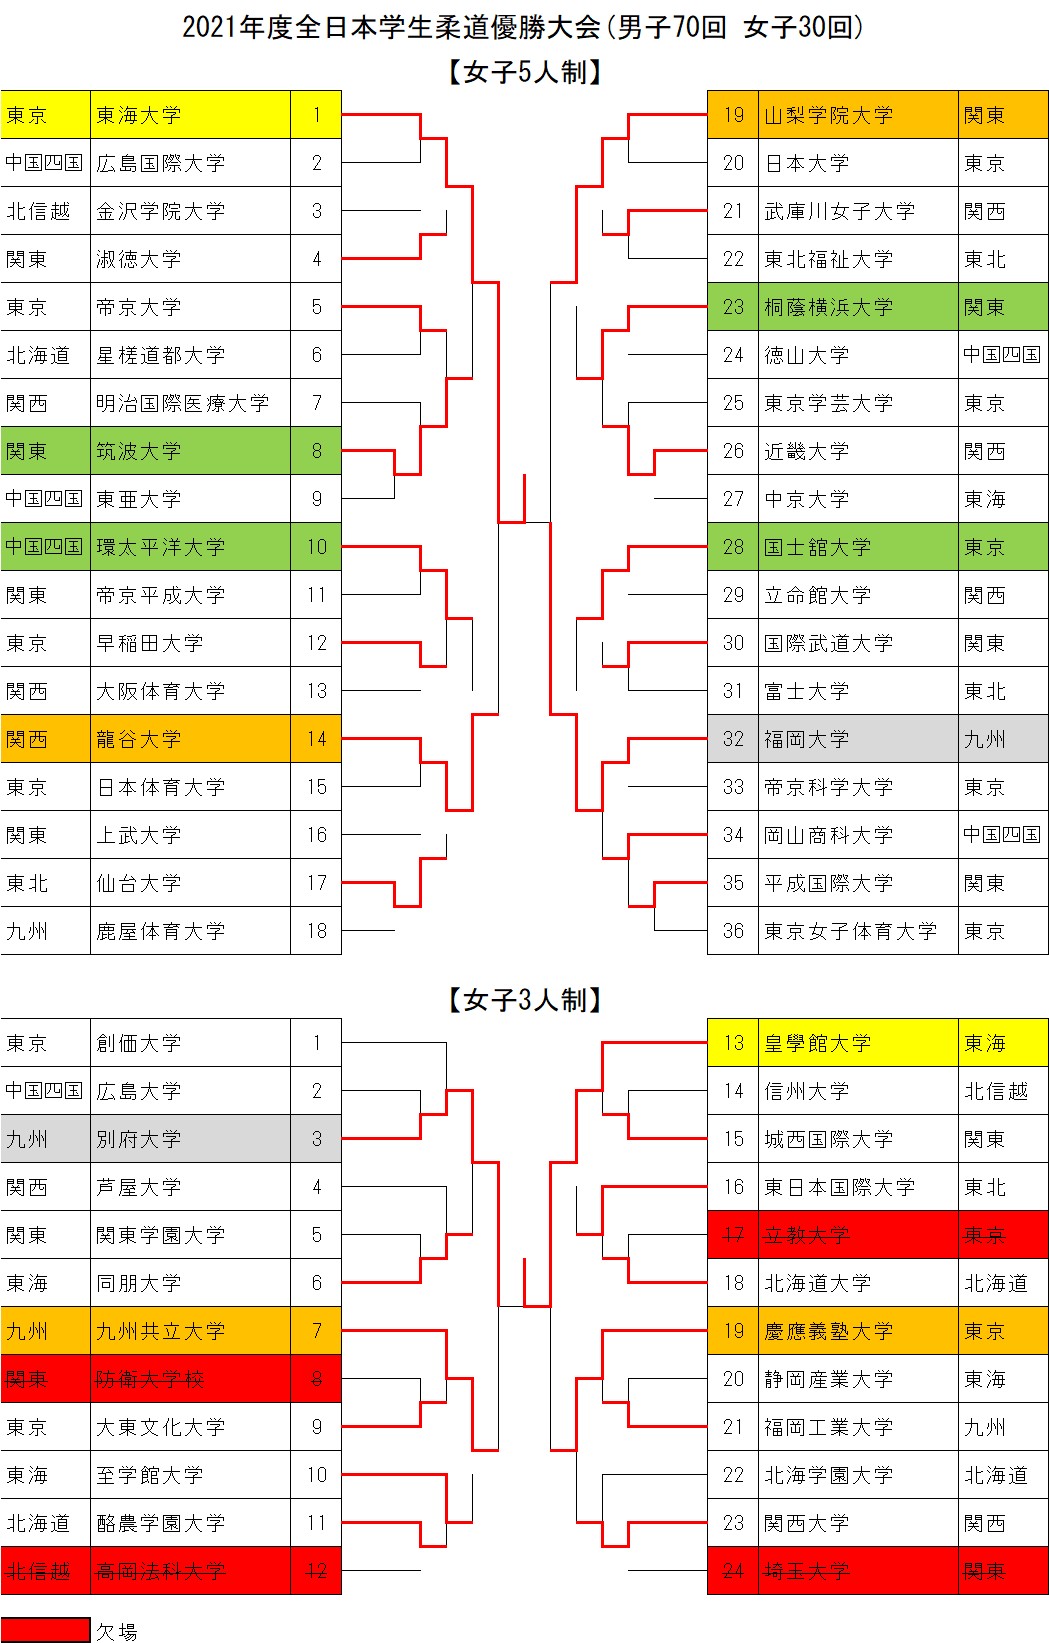 2021年度全日本学生柔道優勝大会男子70回 女子30回